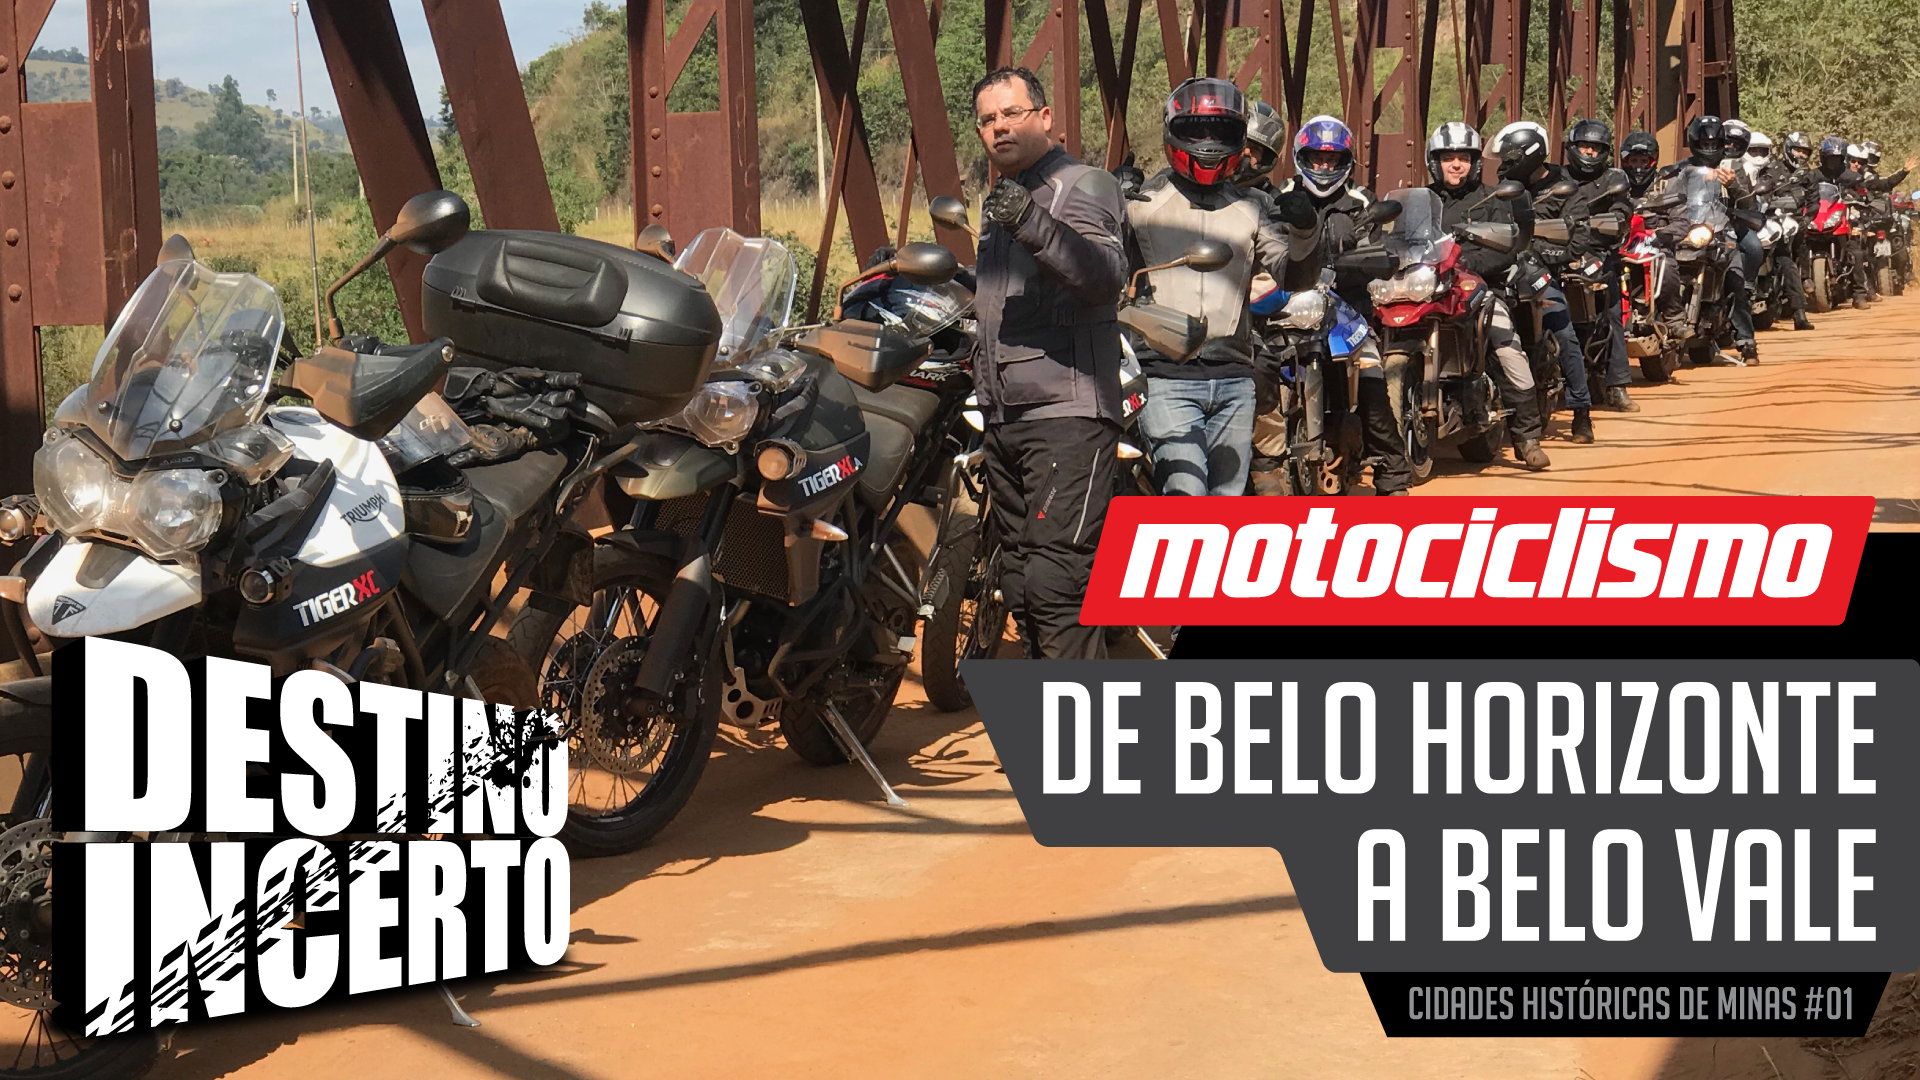 Moto, vídeo, viagem, Minas Gerais, MG, cidade histórica, Destino Incerto, motociclismo, canal no YouTube, vídeos, Motociclismo Online, Revista Motociclismo, TRX, viagem de moto, viajar de moto, dica de viagem de moto, dica de destino, dicas, Belo Horizonte, Belo Vale